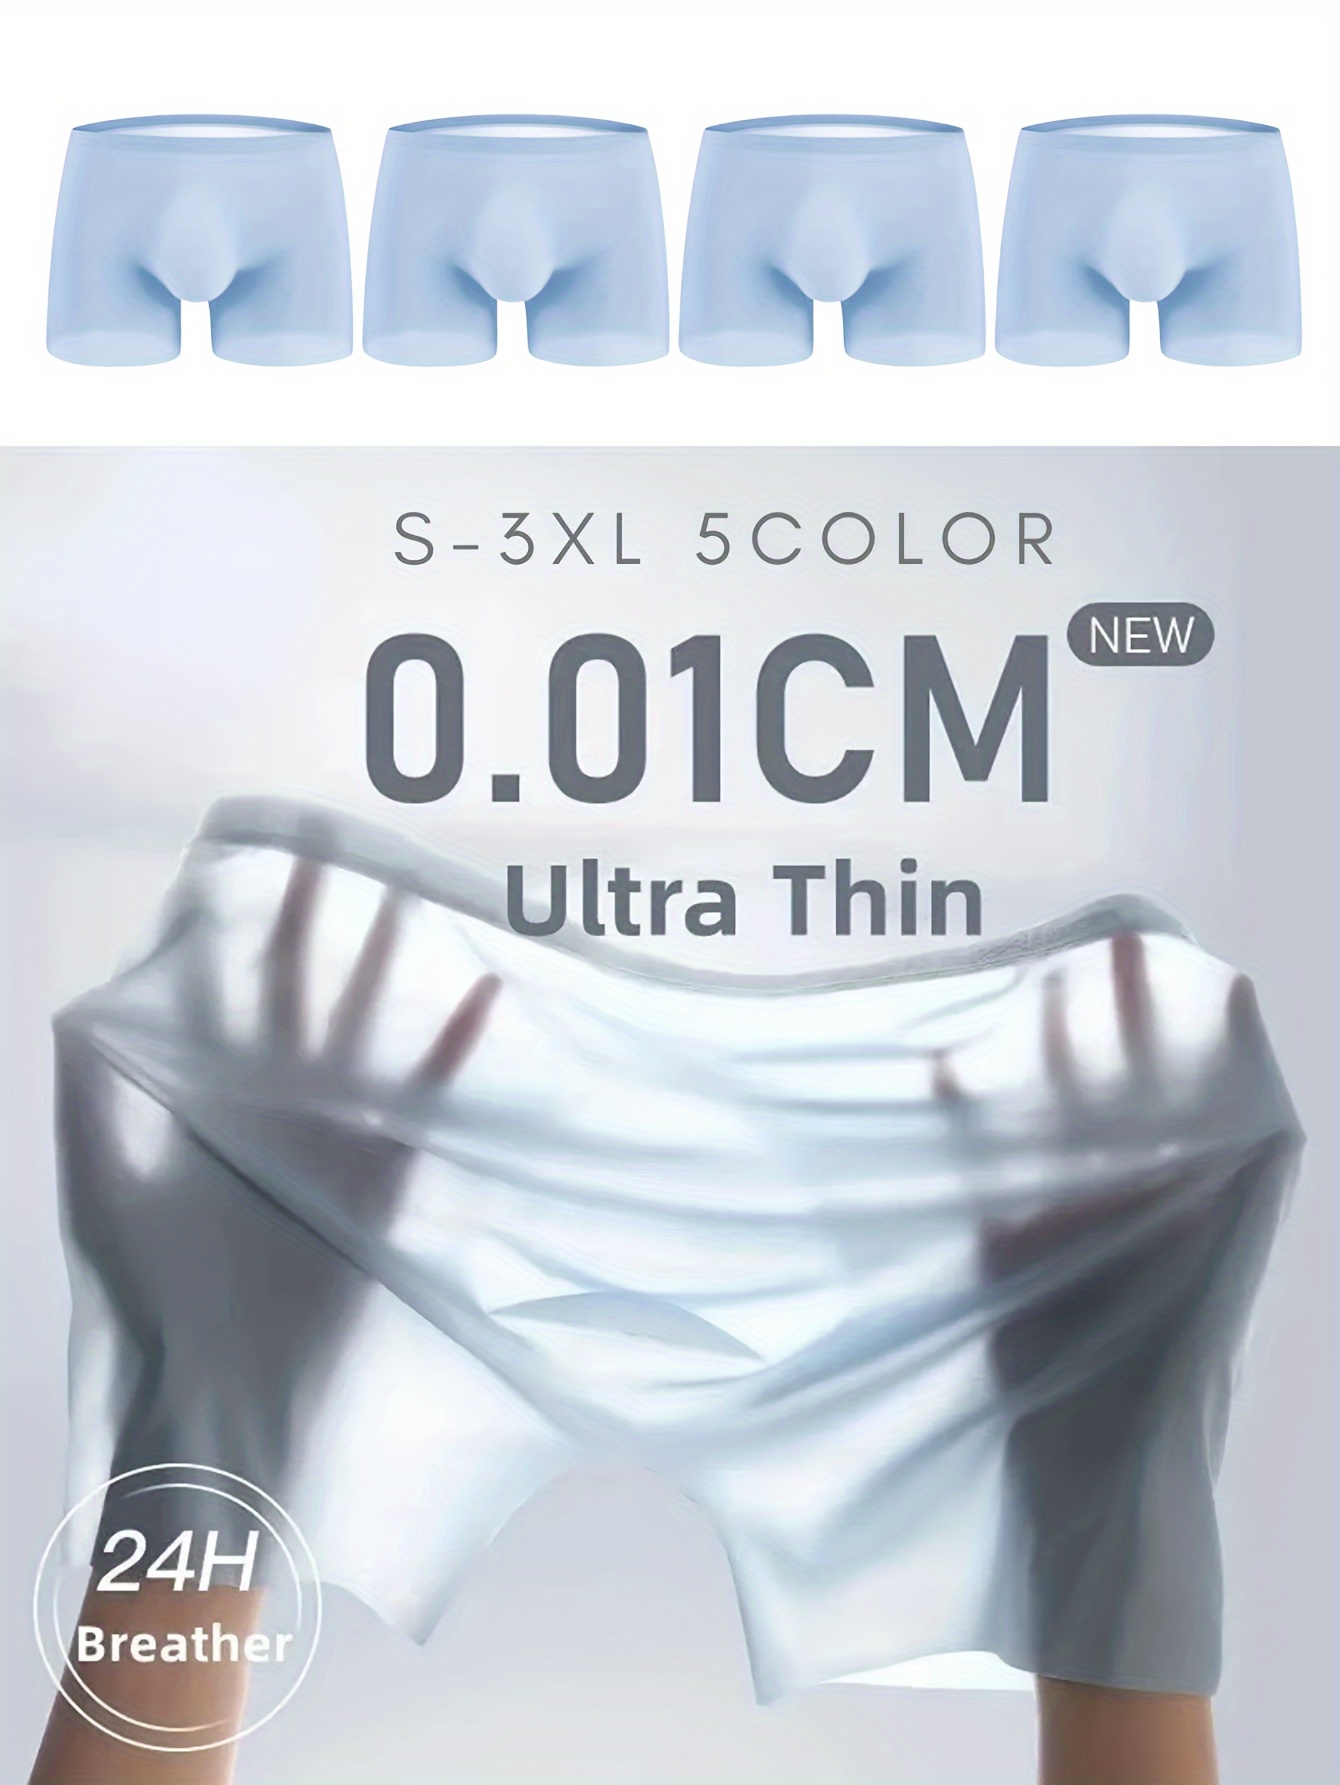 Men's Traceless Underwear Ice Silk Boxer Brief Sexy See-Through